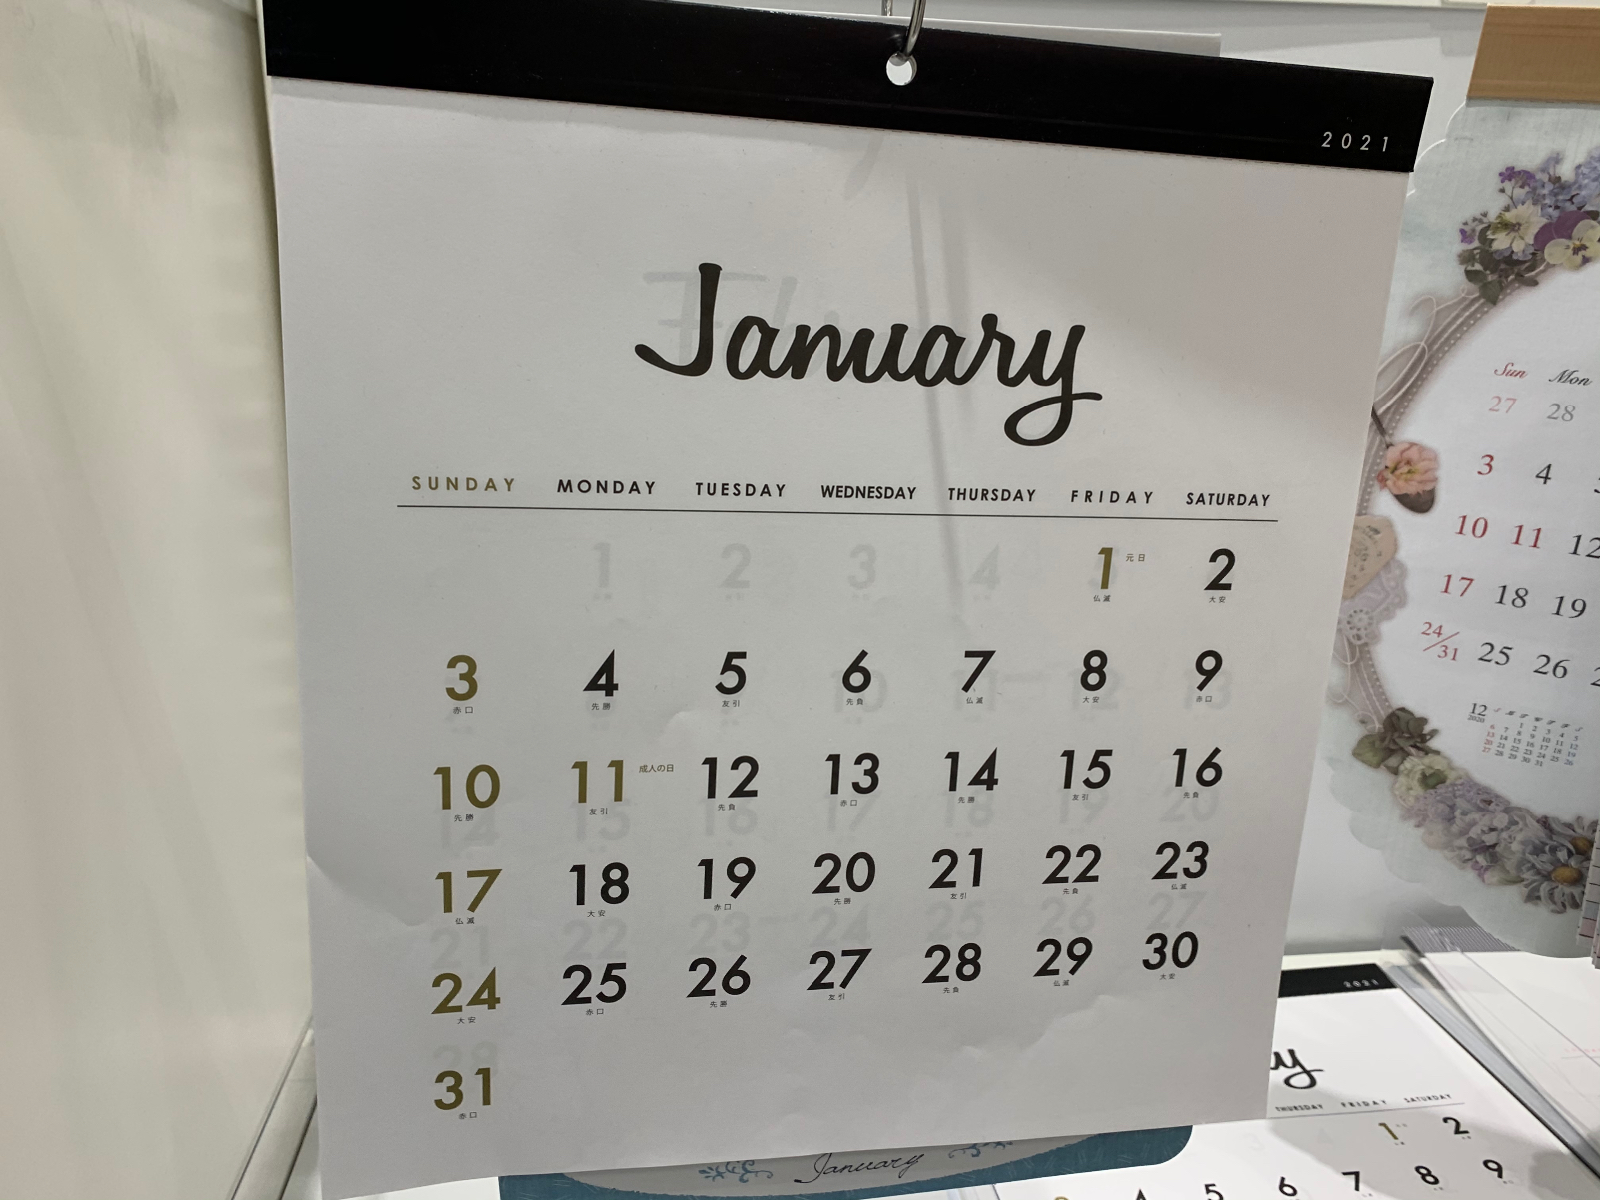 ダイソー セリア 21年カレンダー15選 スケジュールシェアがスムーズに カレンダー使いのアイデア満載